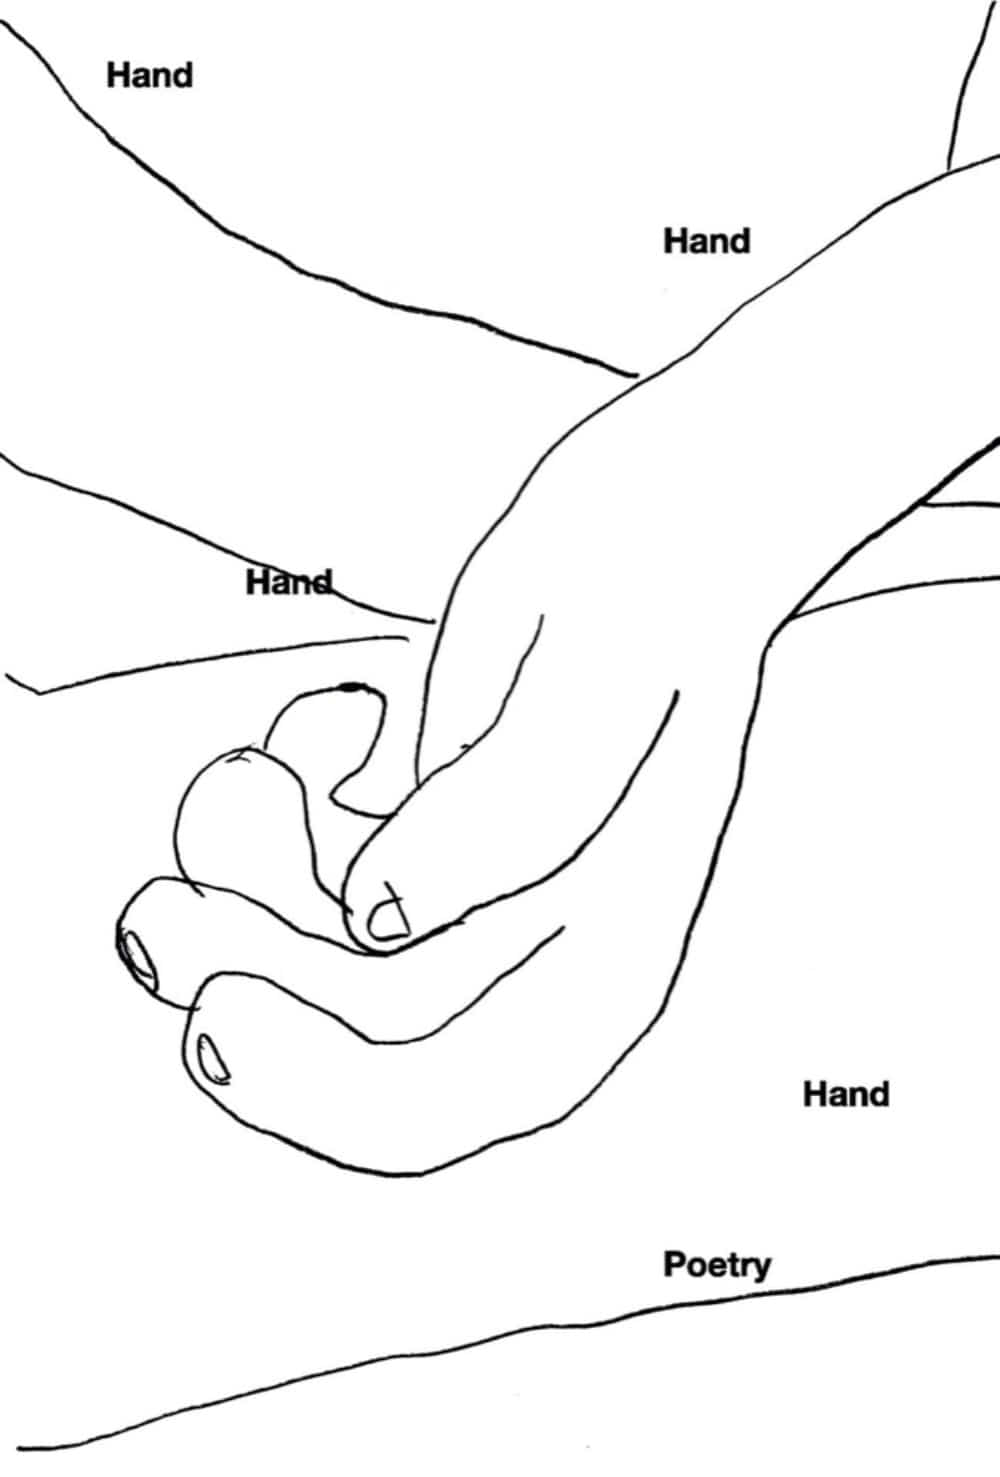 [5차 입고] Hand, Hand, Hand, Hand, Poetry · NOWWE